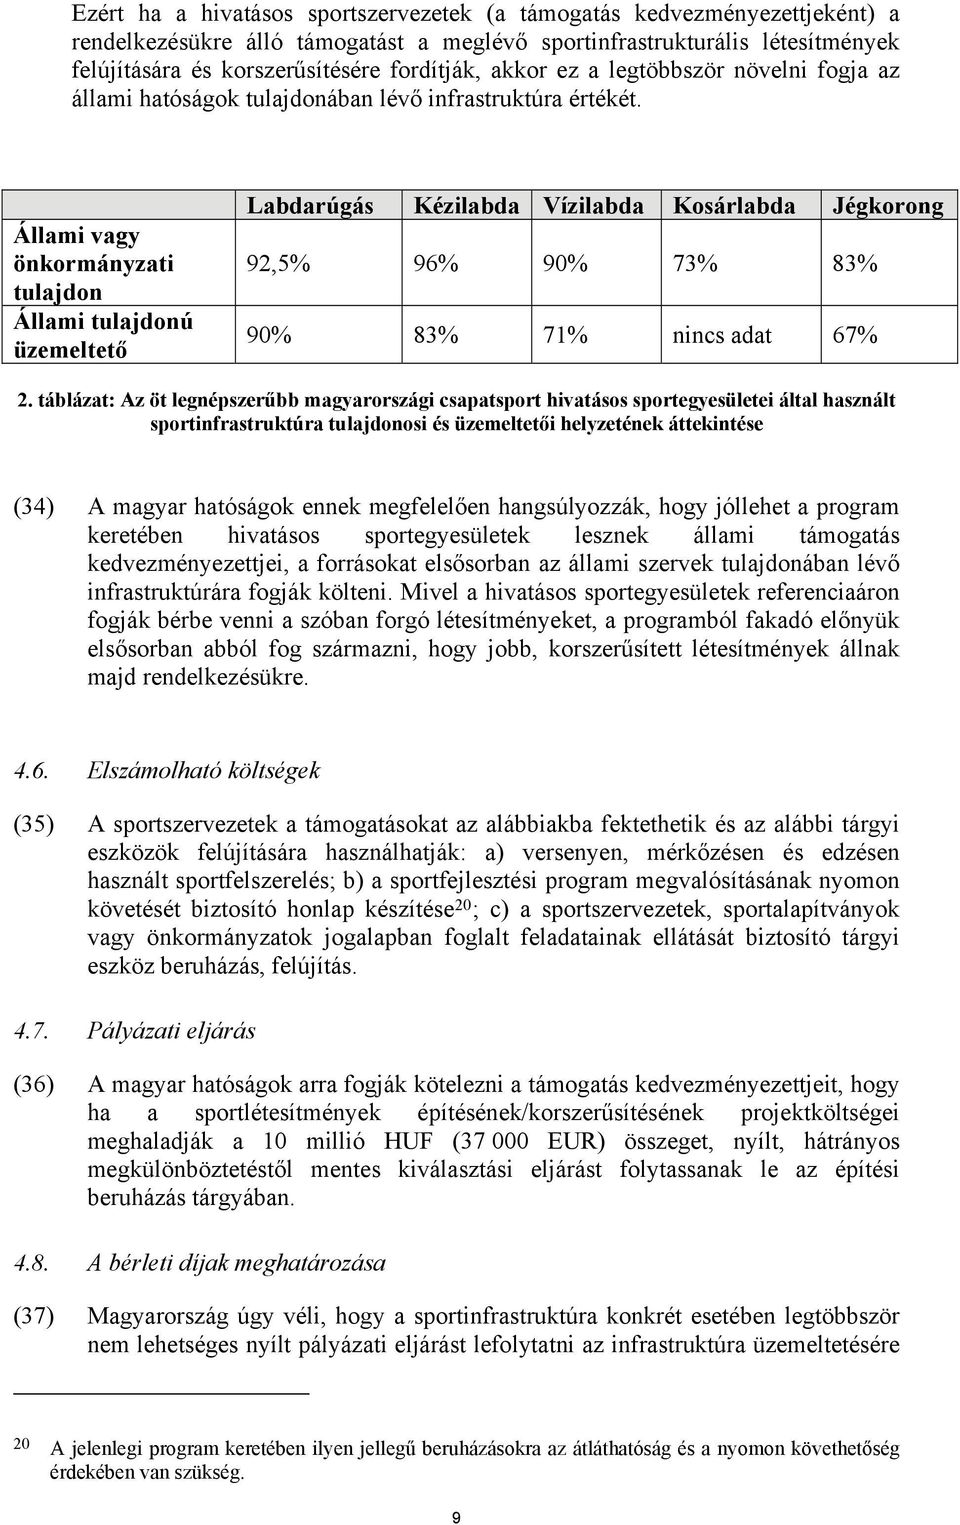 Állami vagy önkormányzati tulajdon Állami tulajdonú üzemeltető Labdarúgás Kézilabda Vízilabda Kosárlabda Jégkorong 92,5% 96% 90% 73% 83% 90% 83% 71% nincs adat 67% 2.